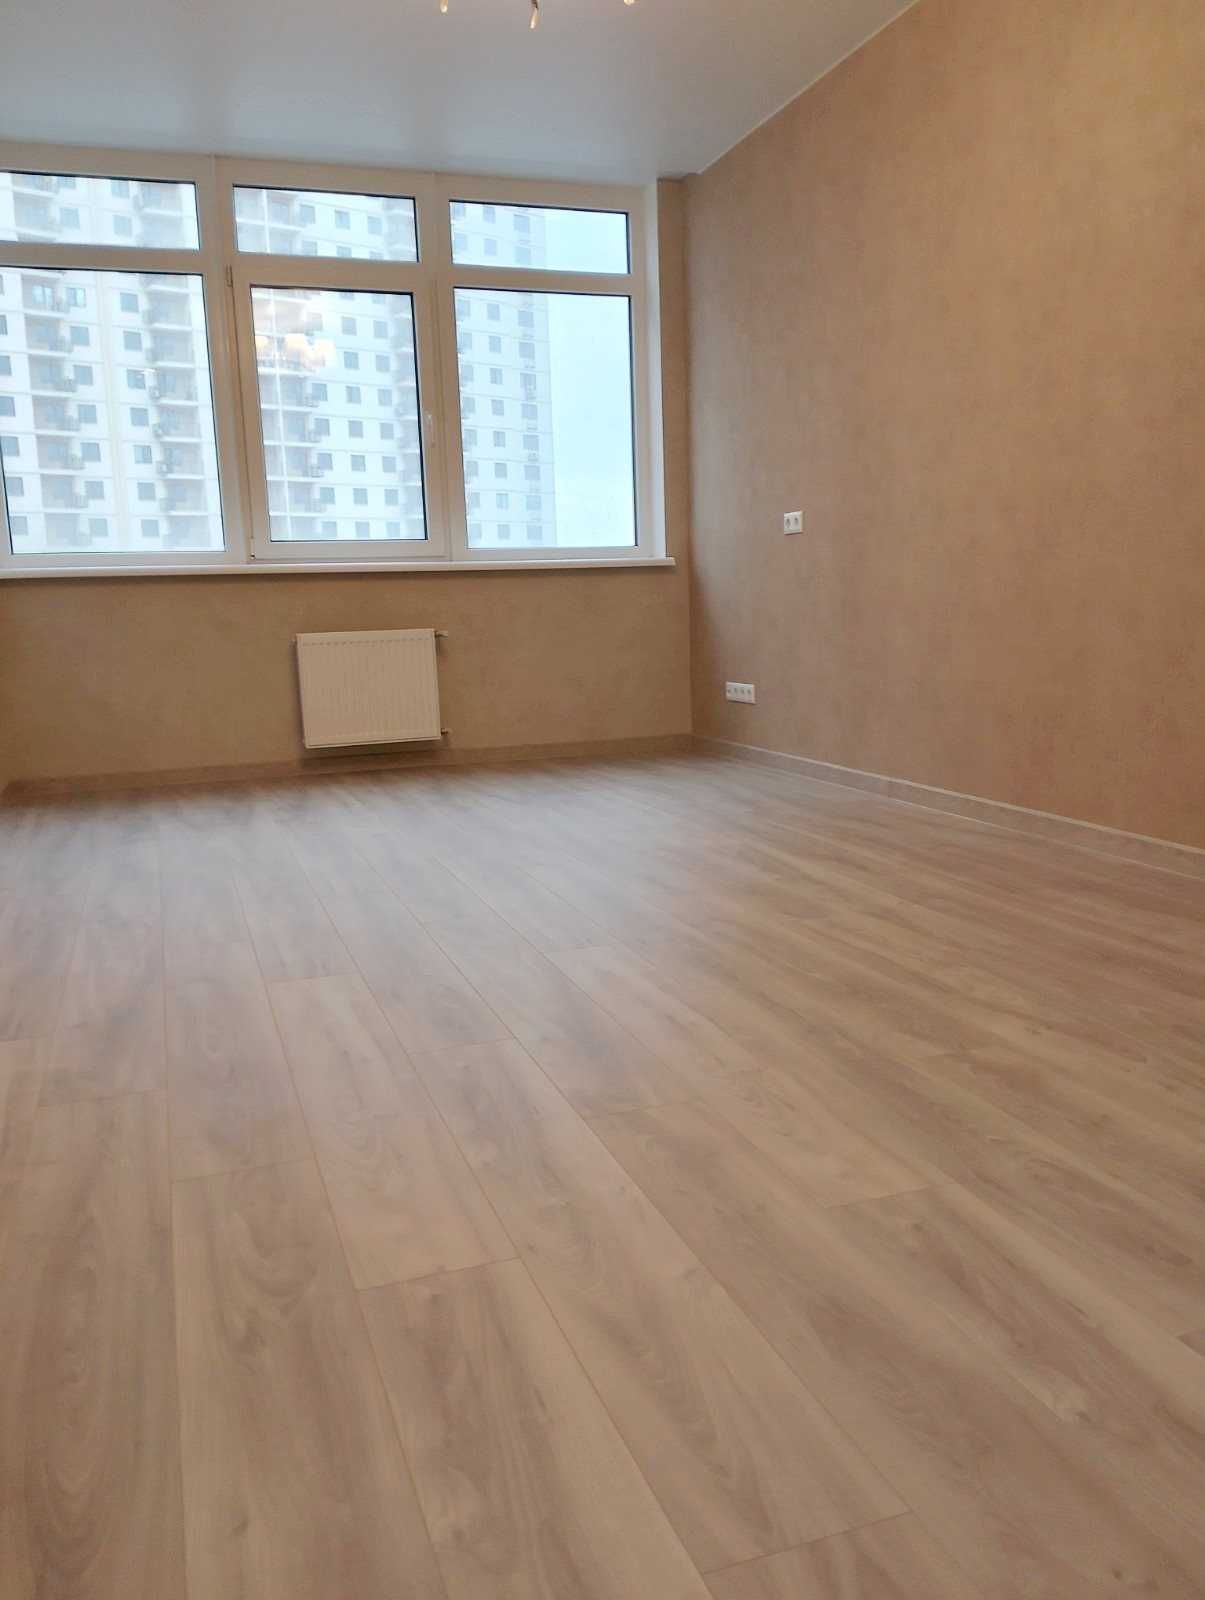 Красивая квартира в новом сданном доме на Ак. Сахарова